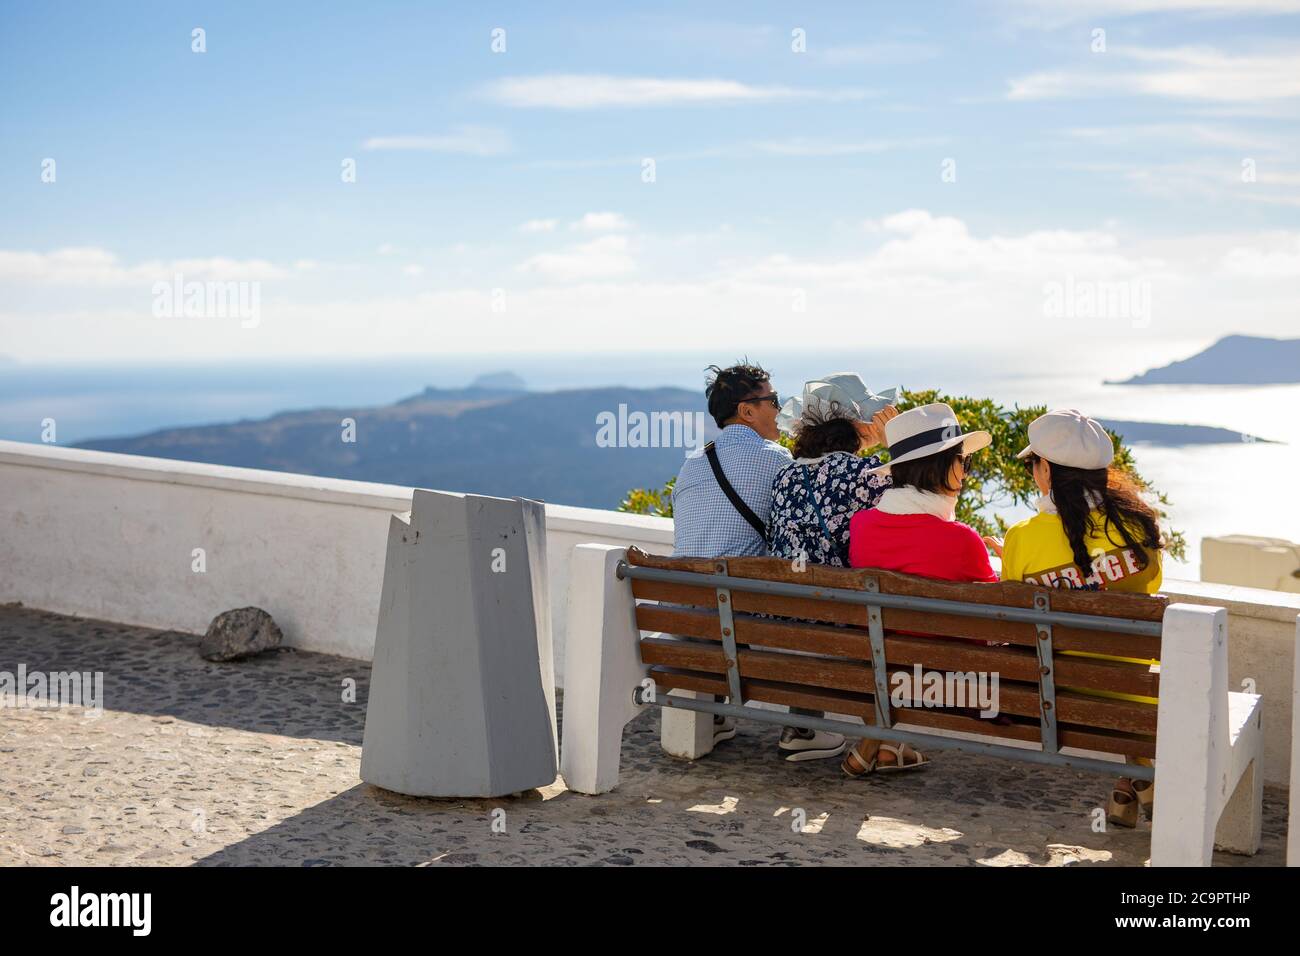 10.10.19 - Santorini: Turista asiatico godendo la vista dalla caldera a Santorini, Grecia. Avventura di viaggio, concetto di turismo Foto Stock